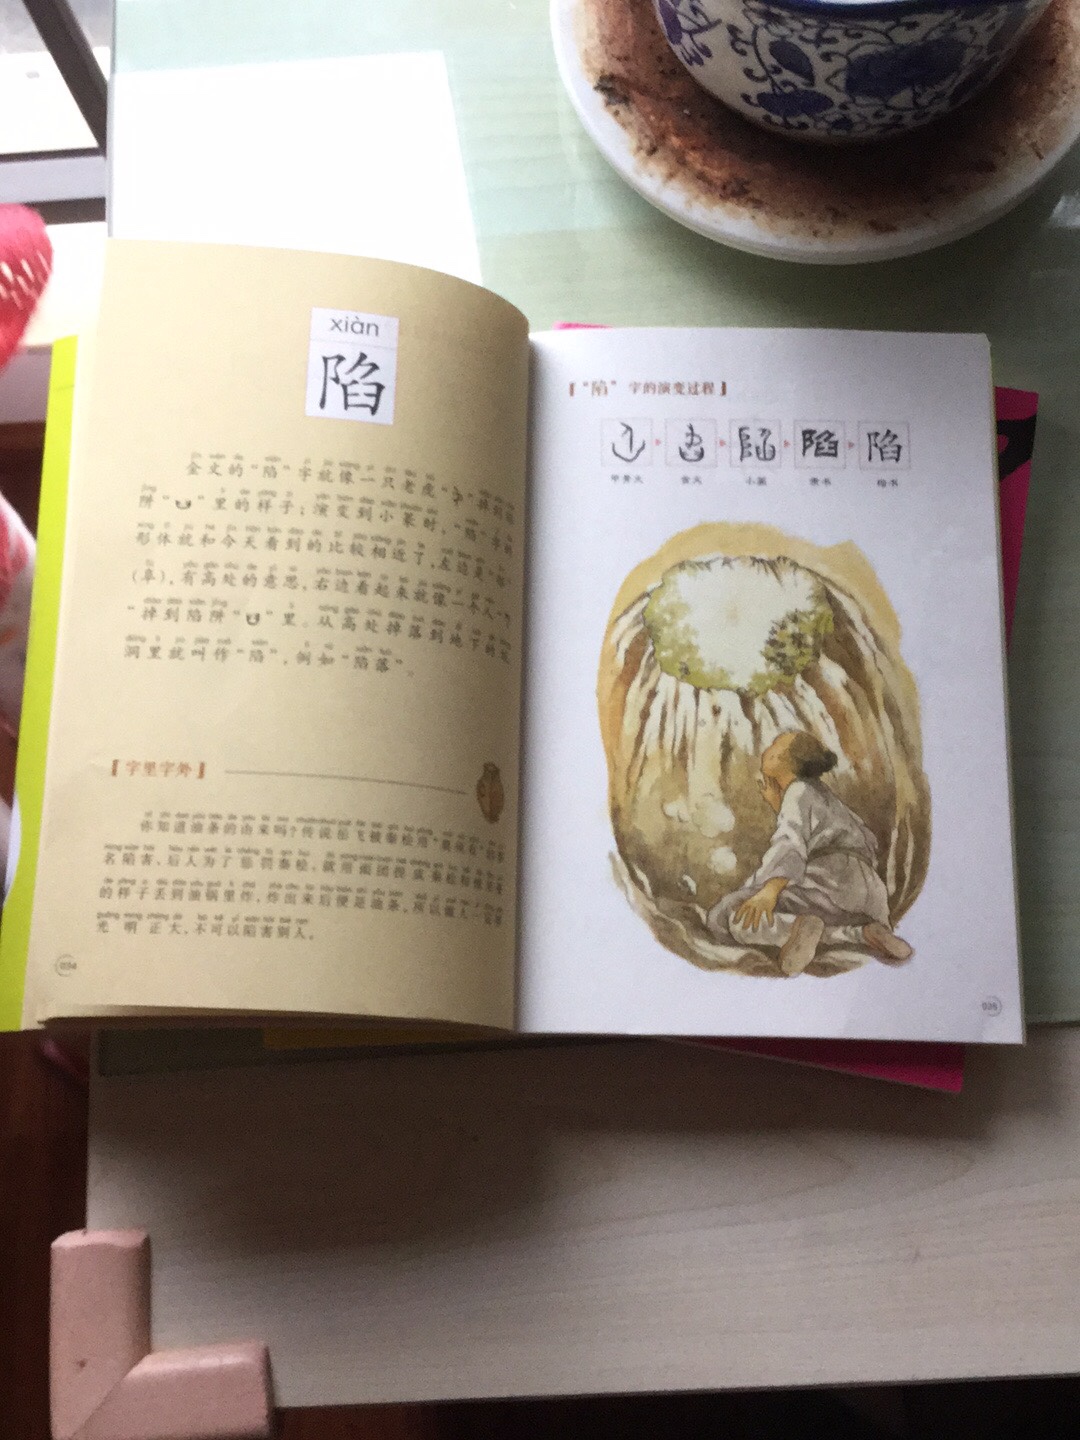 感觉内容太少，一本书没几个字，文字解释很牵强，有条件的还是买本现代汉语词典吧！